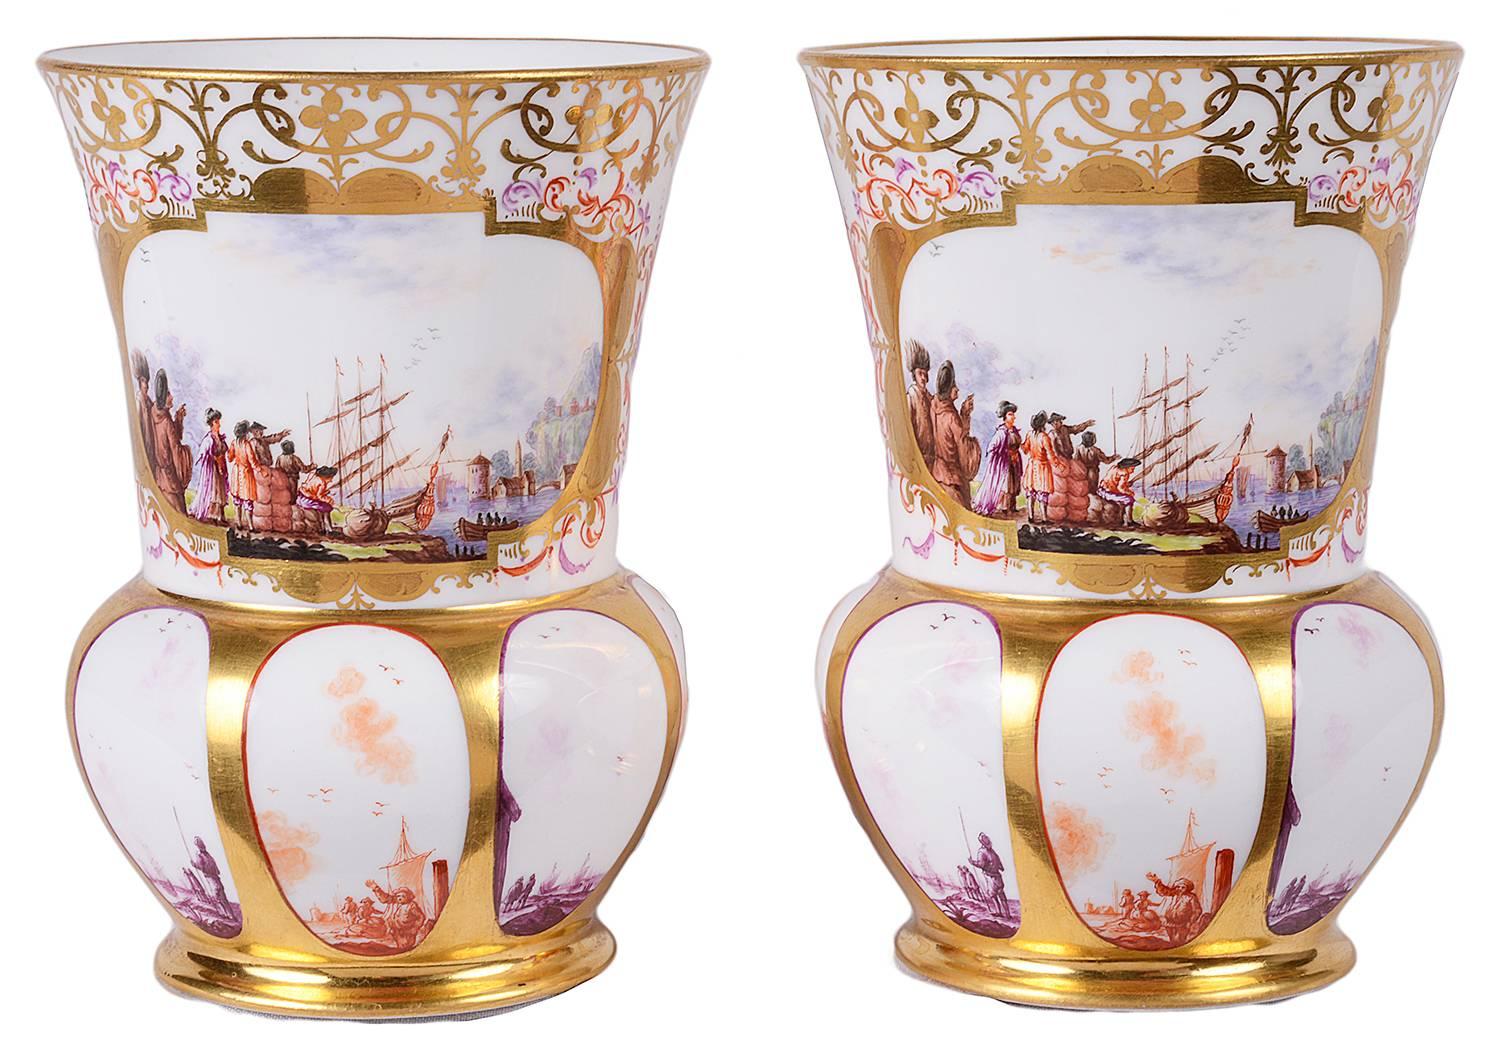 Paire de vases en porcelaine de Meissen de bonne qualité, datant du 19e siècle. Chacune d'entre elles présente une décoration dorée en forme d'enroulement avec des panneaux peints insérés représentant des scènes portuaires.
Épées croisées bleues à